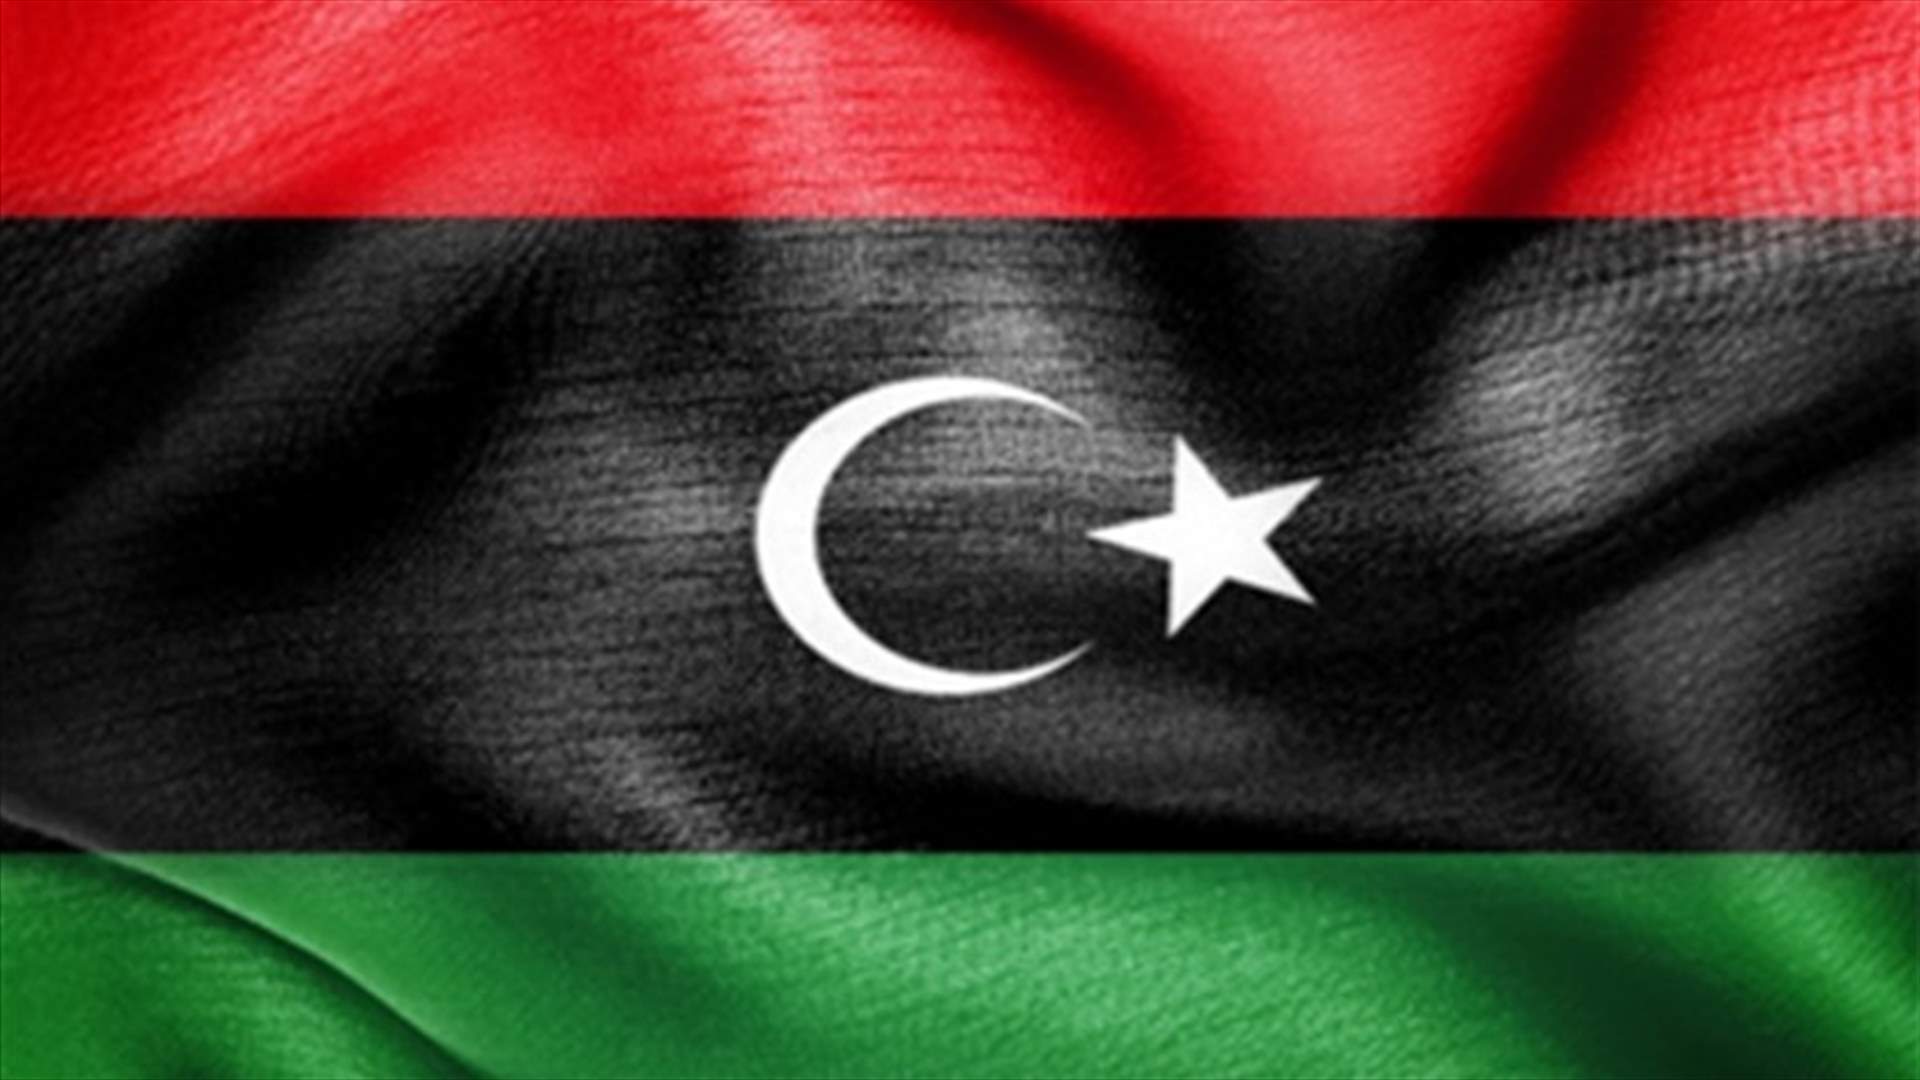 المجلس الانتقالي الليبي يعترف بالمجلس الوطني السوري ويغلق سفارة سوريا بطرابلس الغرب